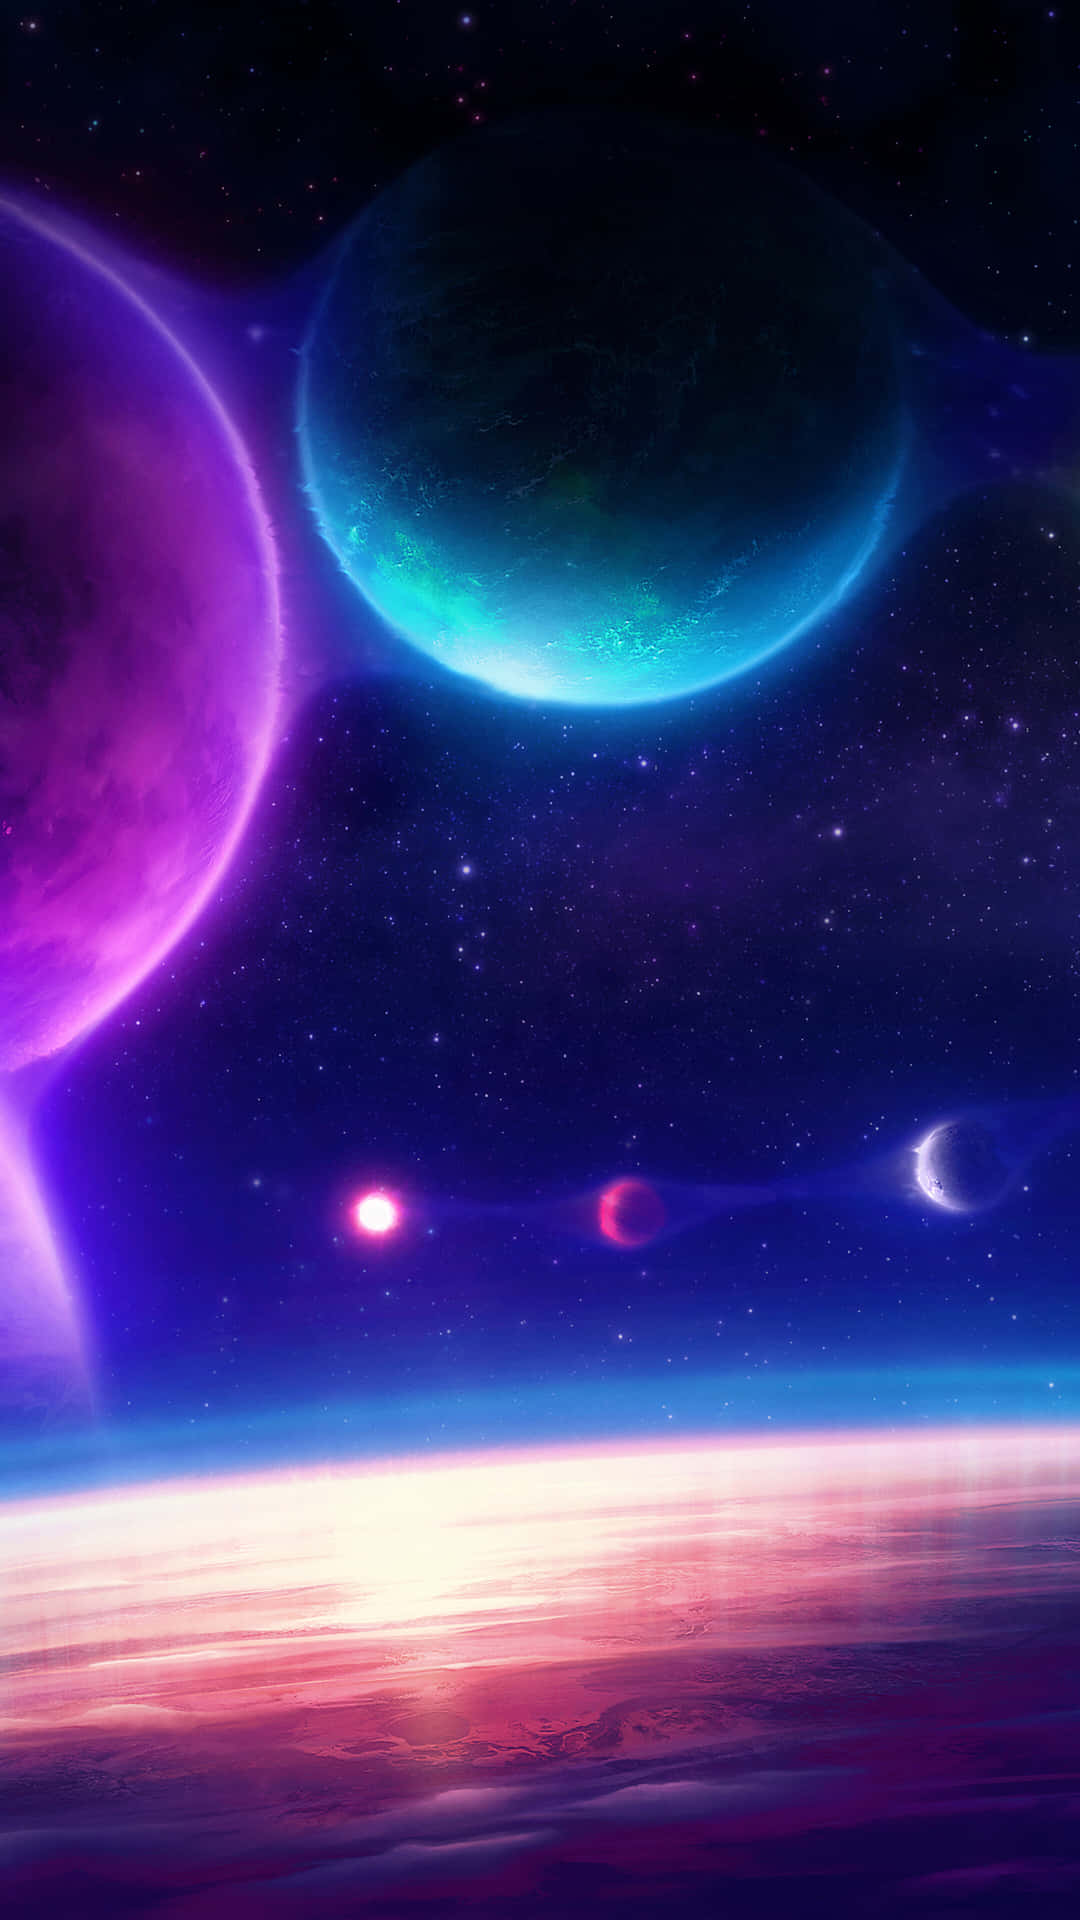 Umaimagem Colorida De Planetas No Espaço